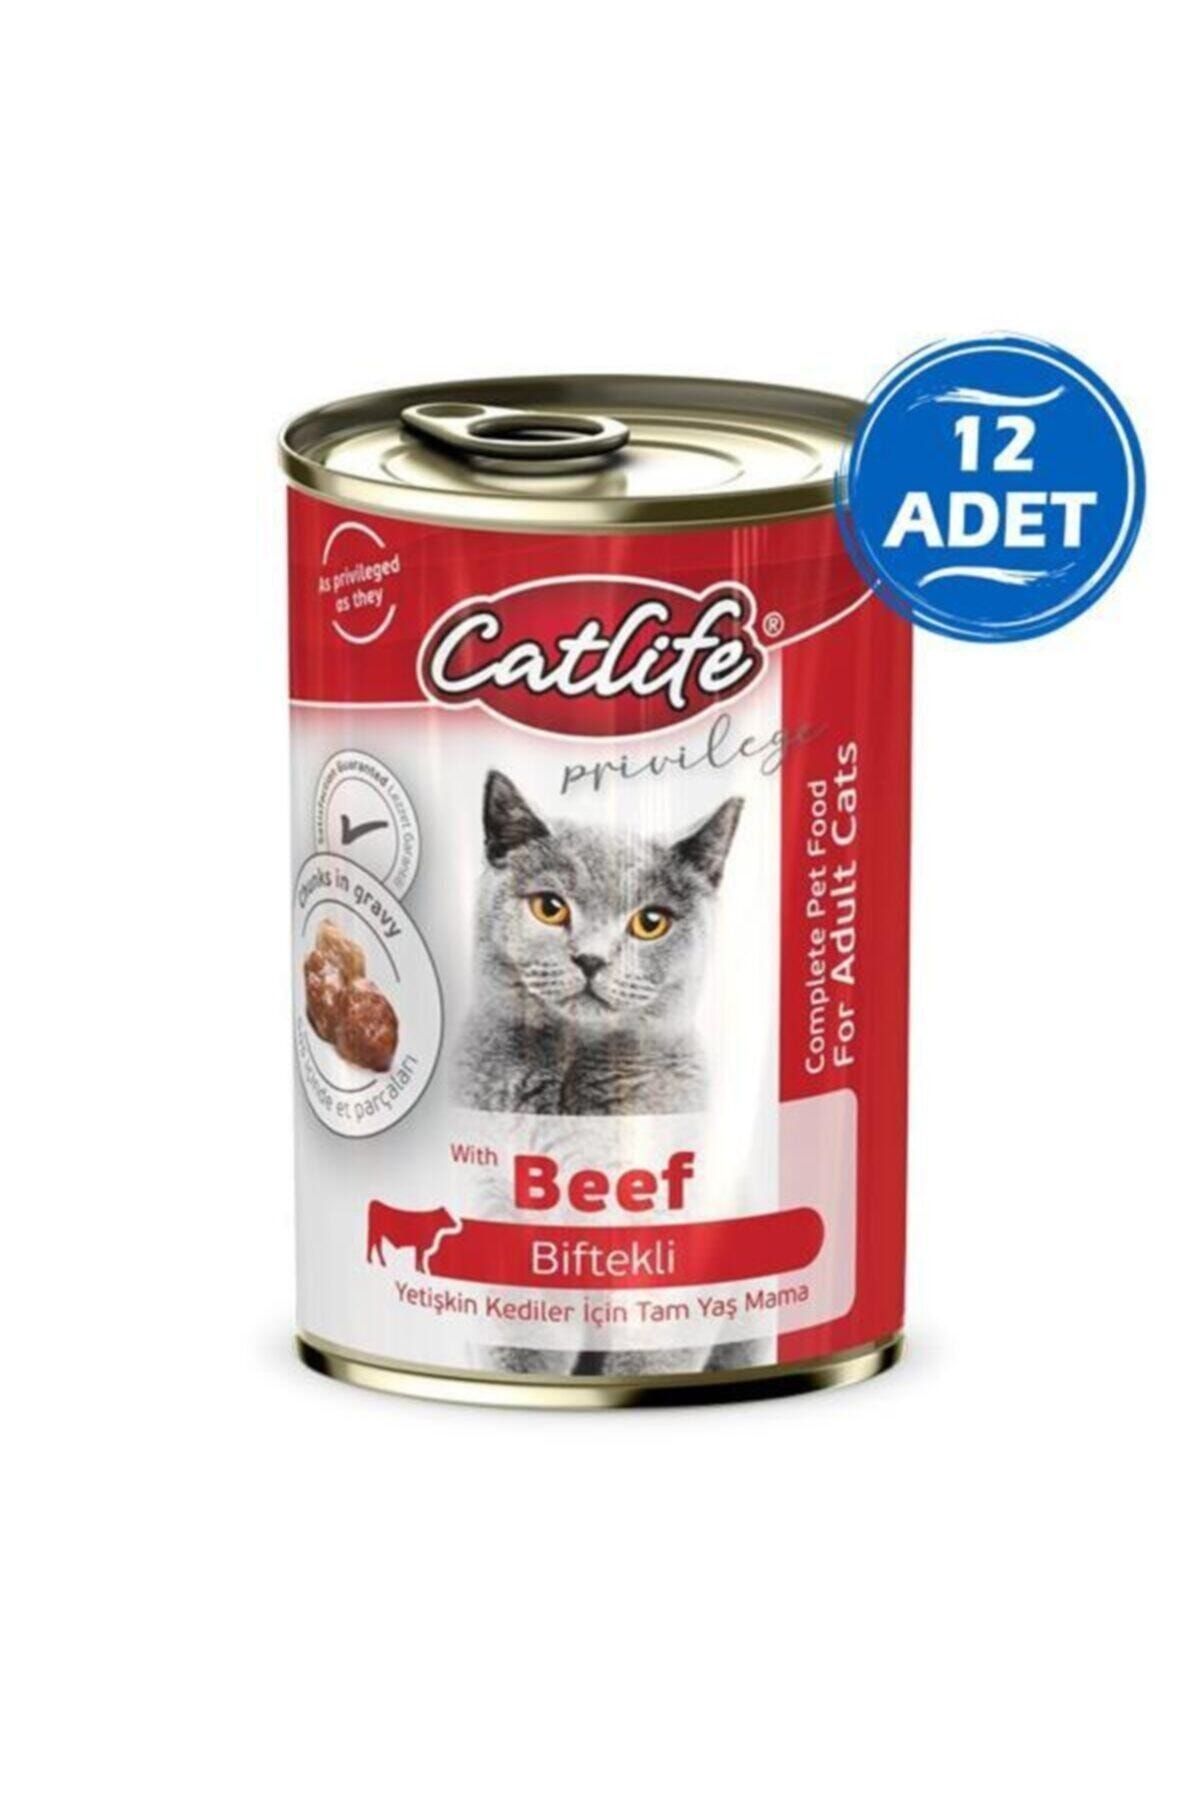 Doglife Catlife Biftekli Yetişkin Kedi Konservesi 400gr 12 Adet